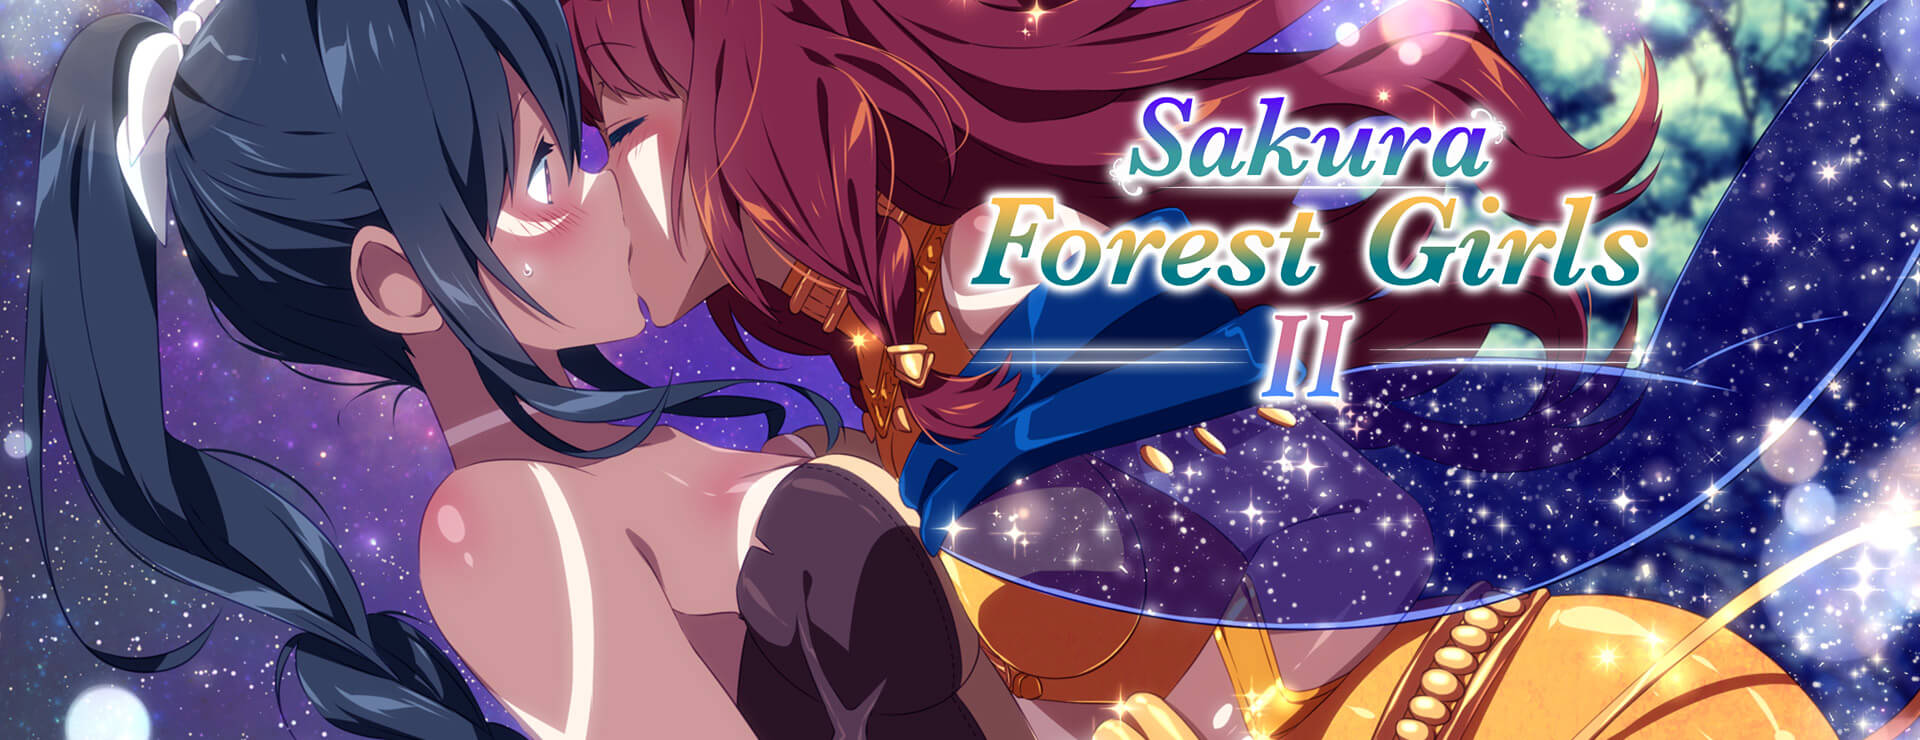 Sakura Forest Girls 2 - Japanisches Adventure Spiel